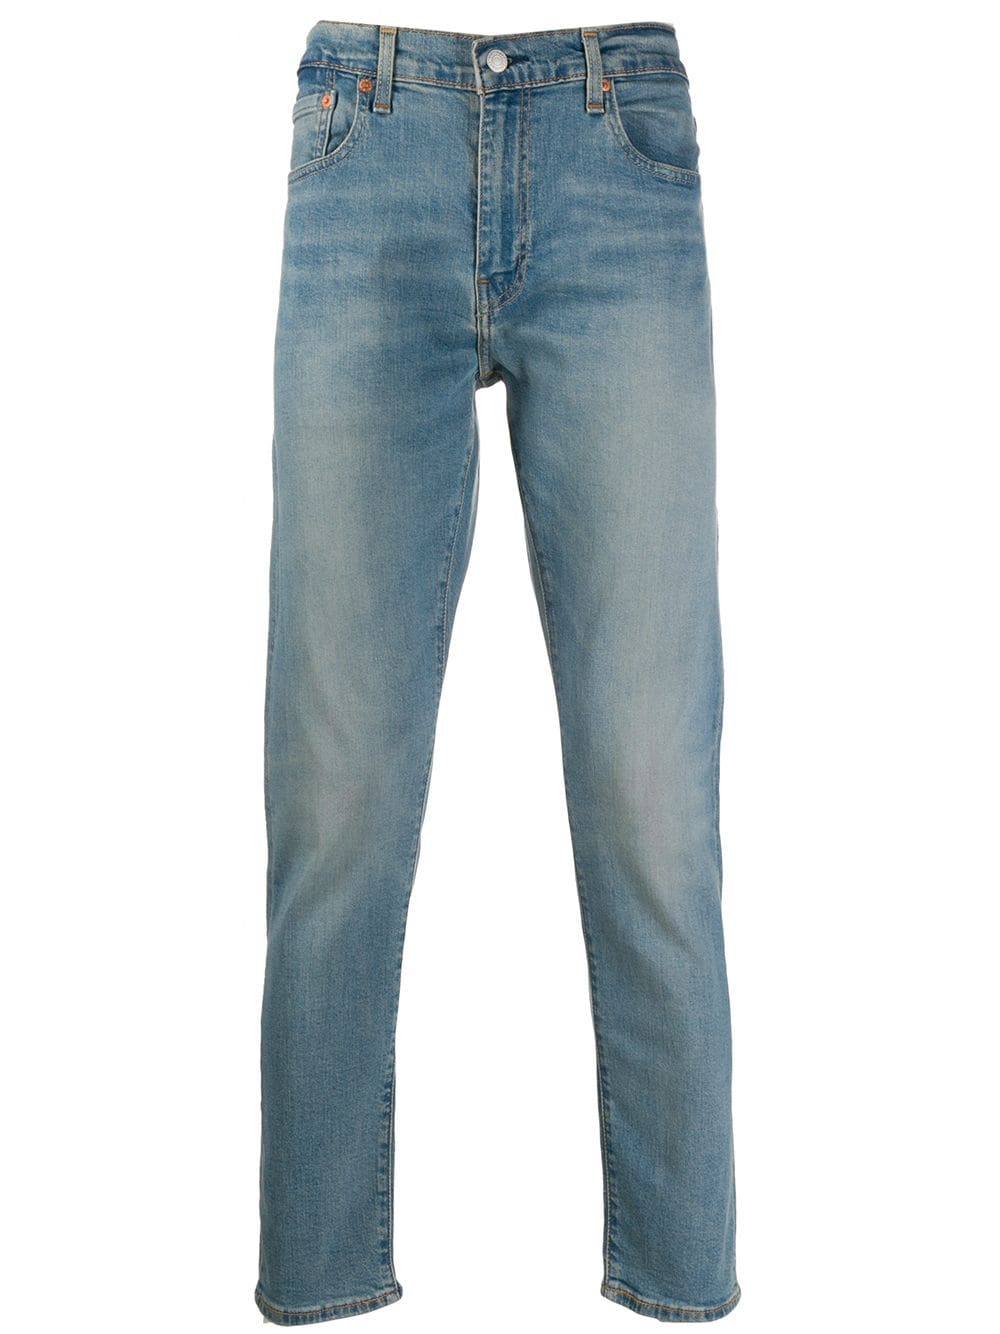 Jeans slim fit in cotone stretch azzurro